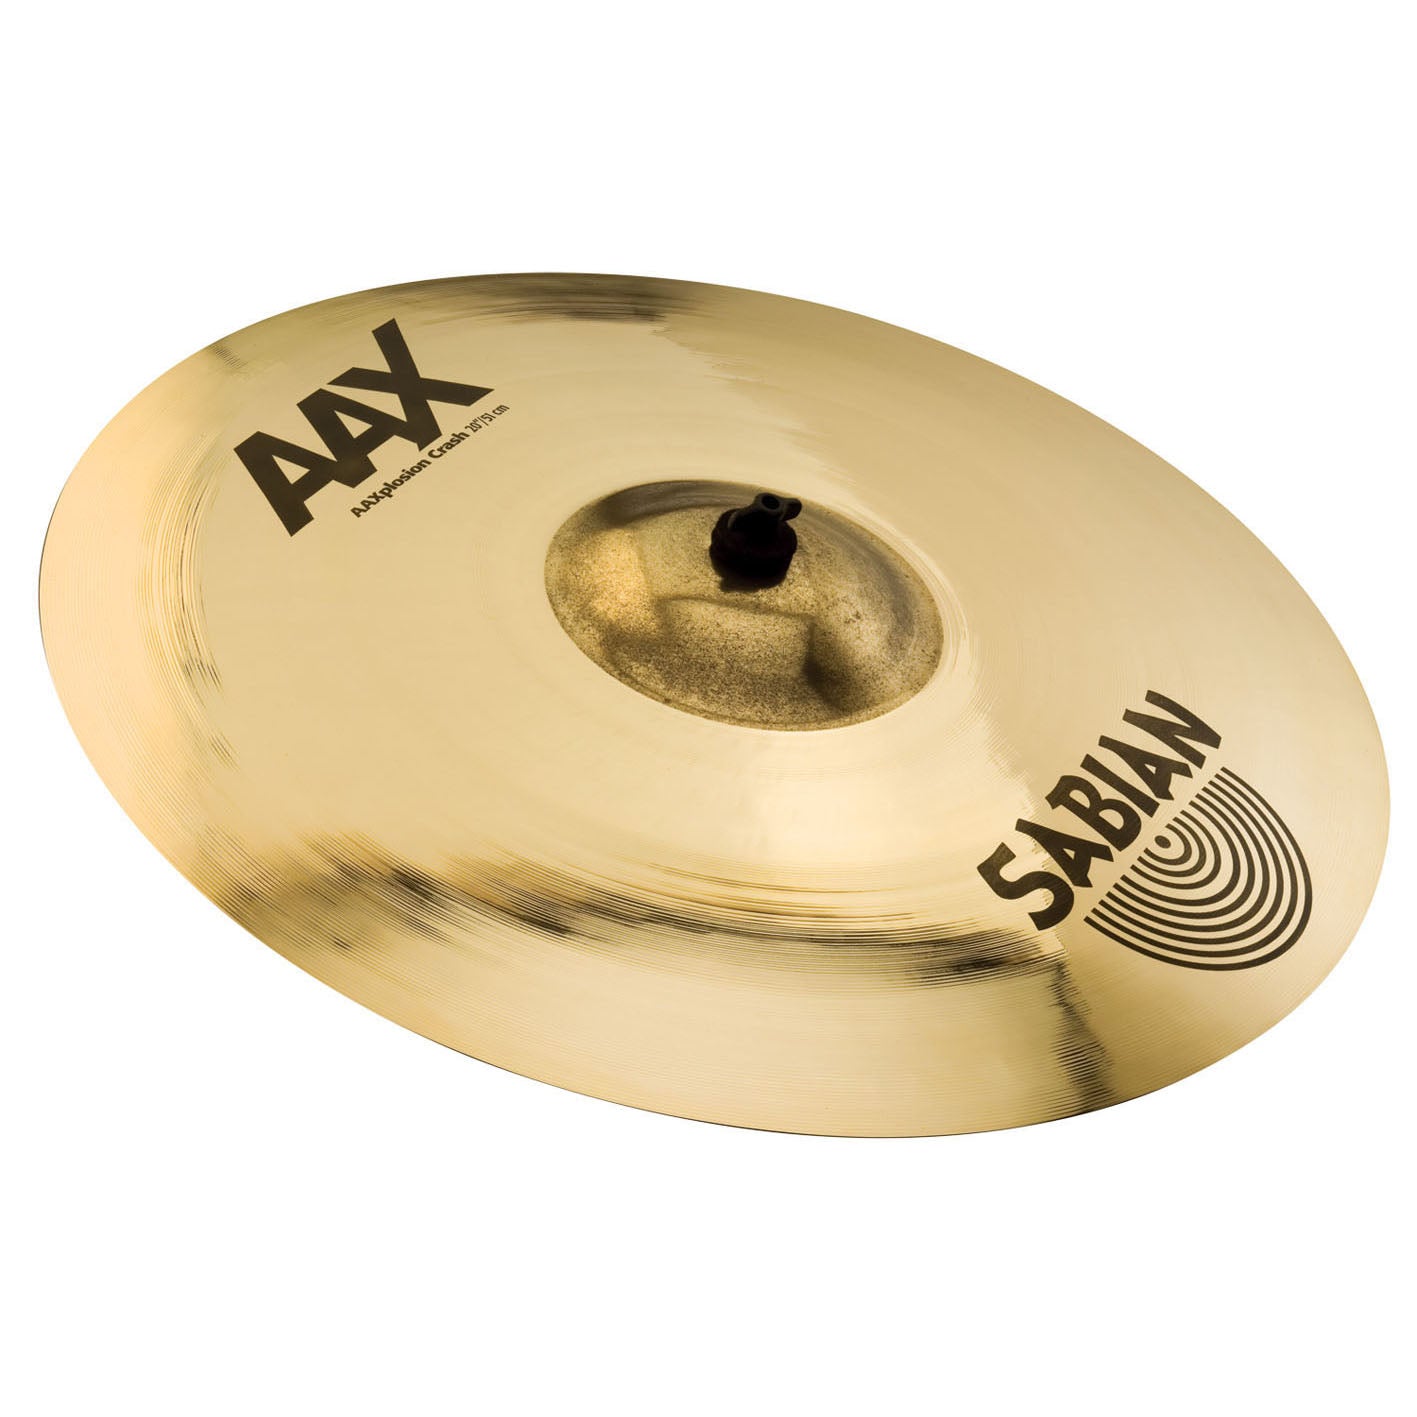 Sabian AAX-plosion Crash Cymbal 16 Inches